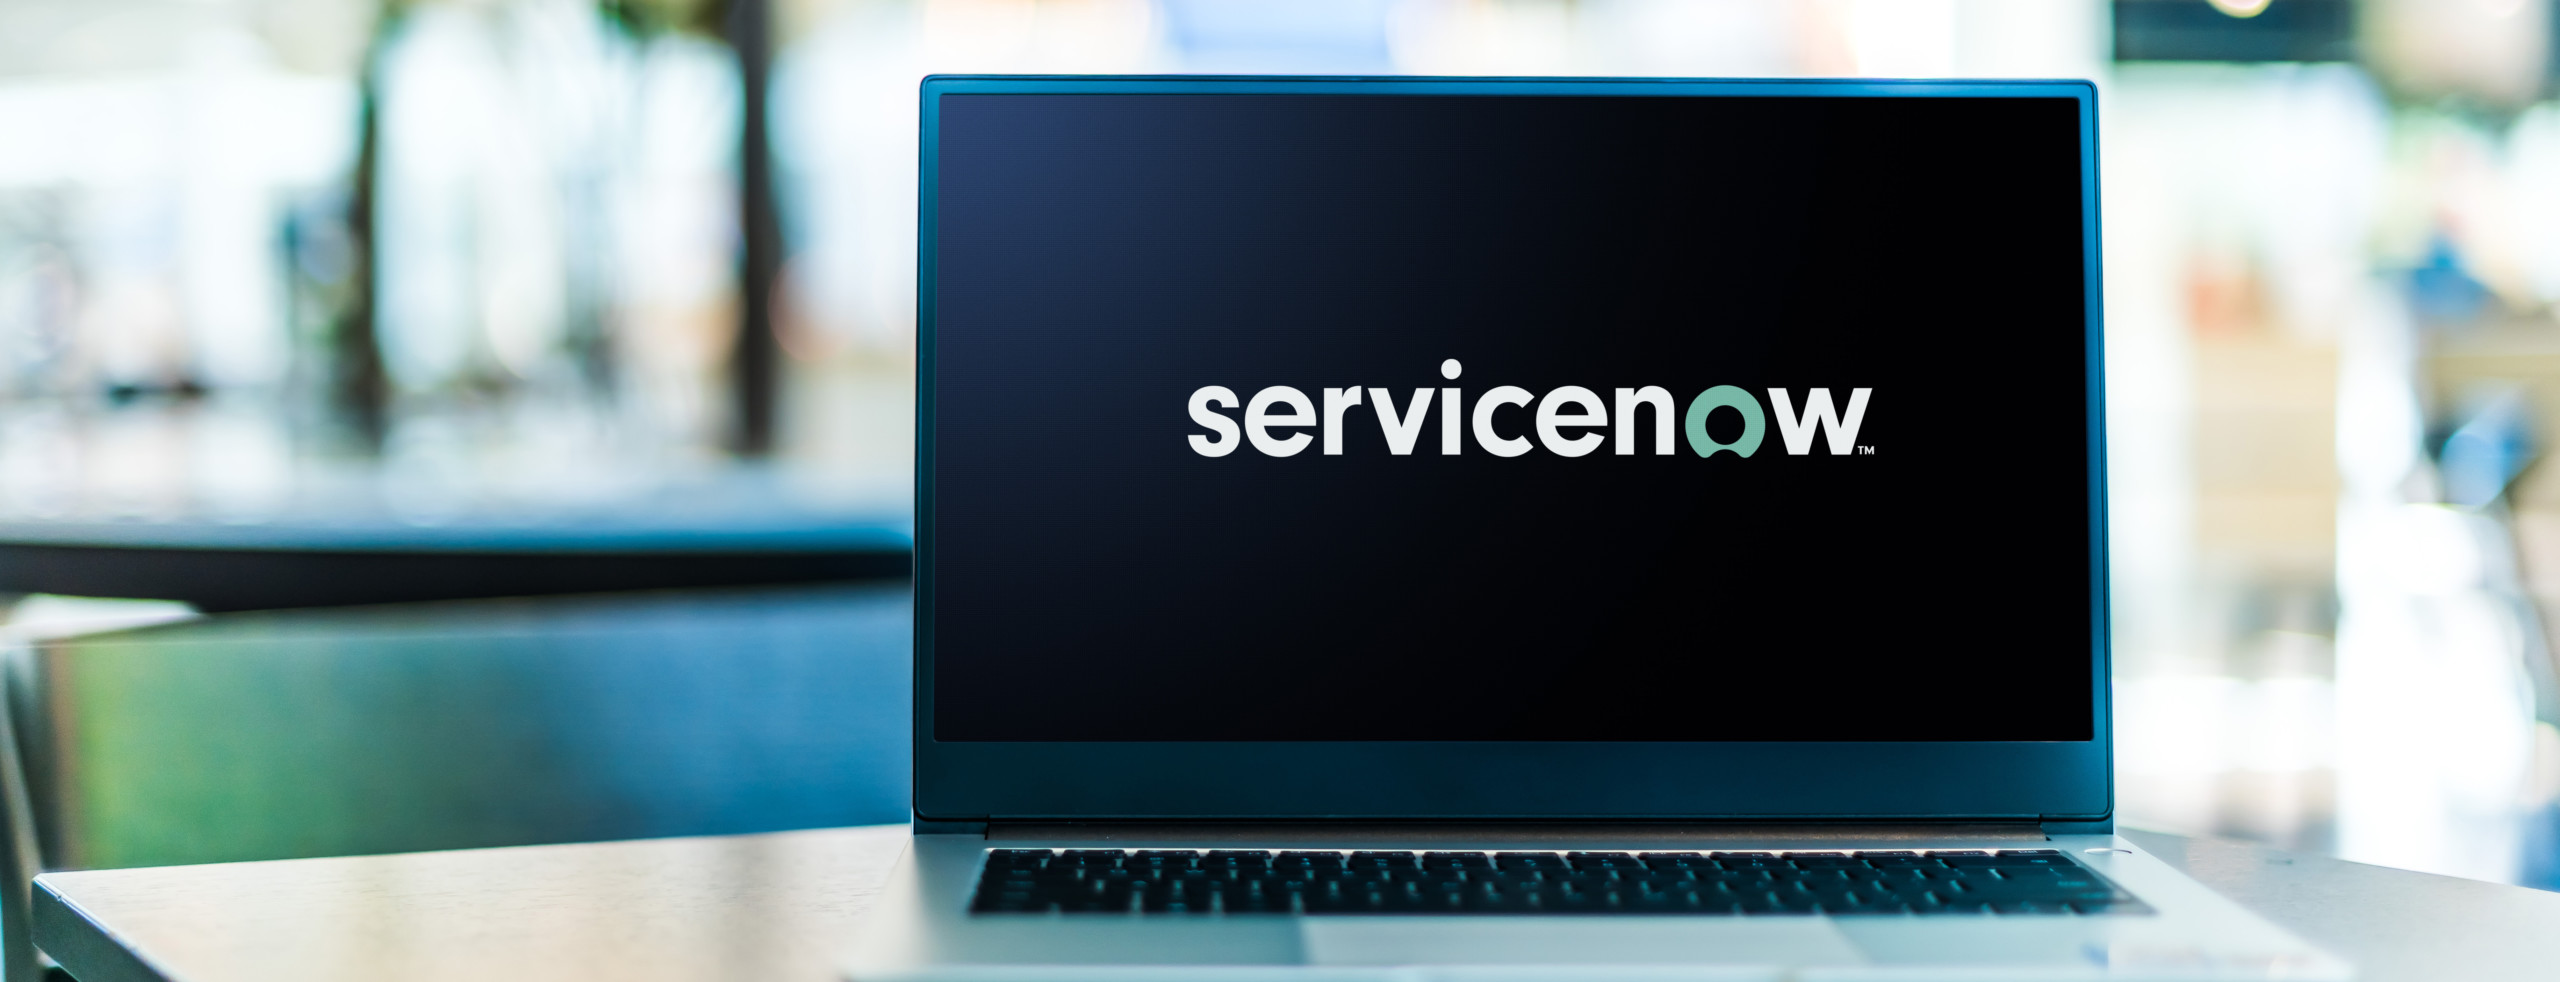 ServiceNow: Die GenAI-Angebote verkaufen sich schneller als alle bisherigen Produkte des Unternehmens